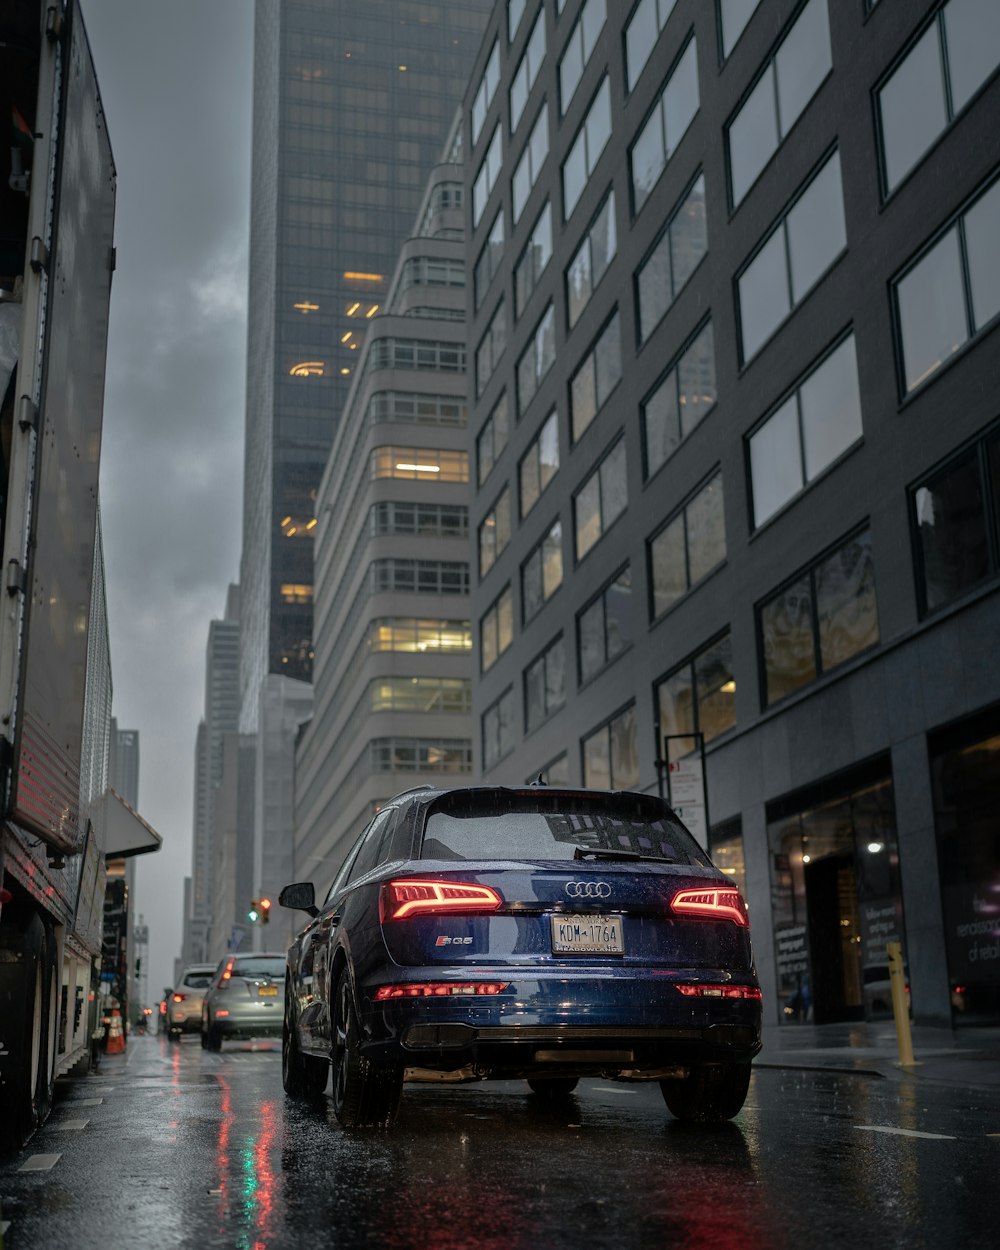 Audi A 4 negro en la carretera entre edificios de gran altura durante el día